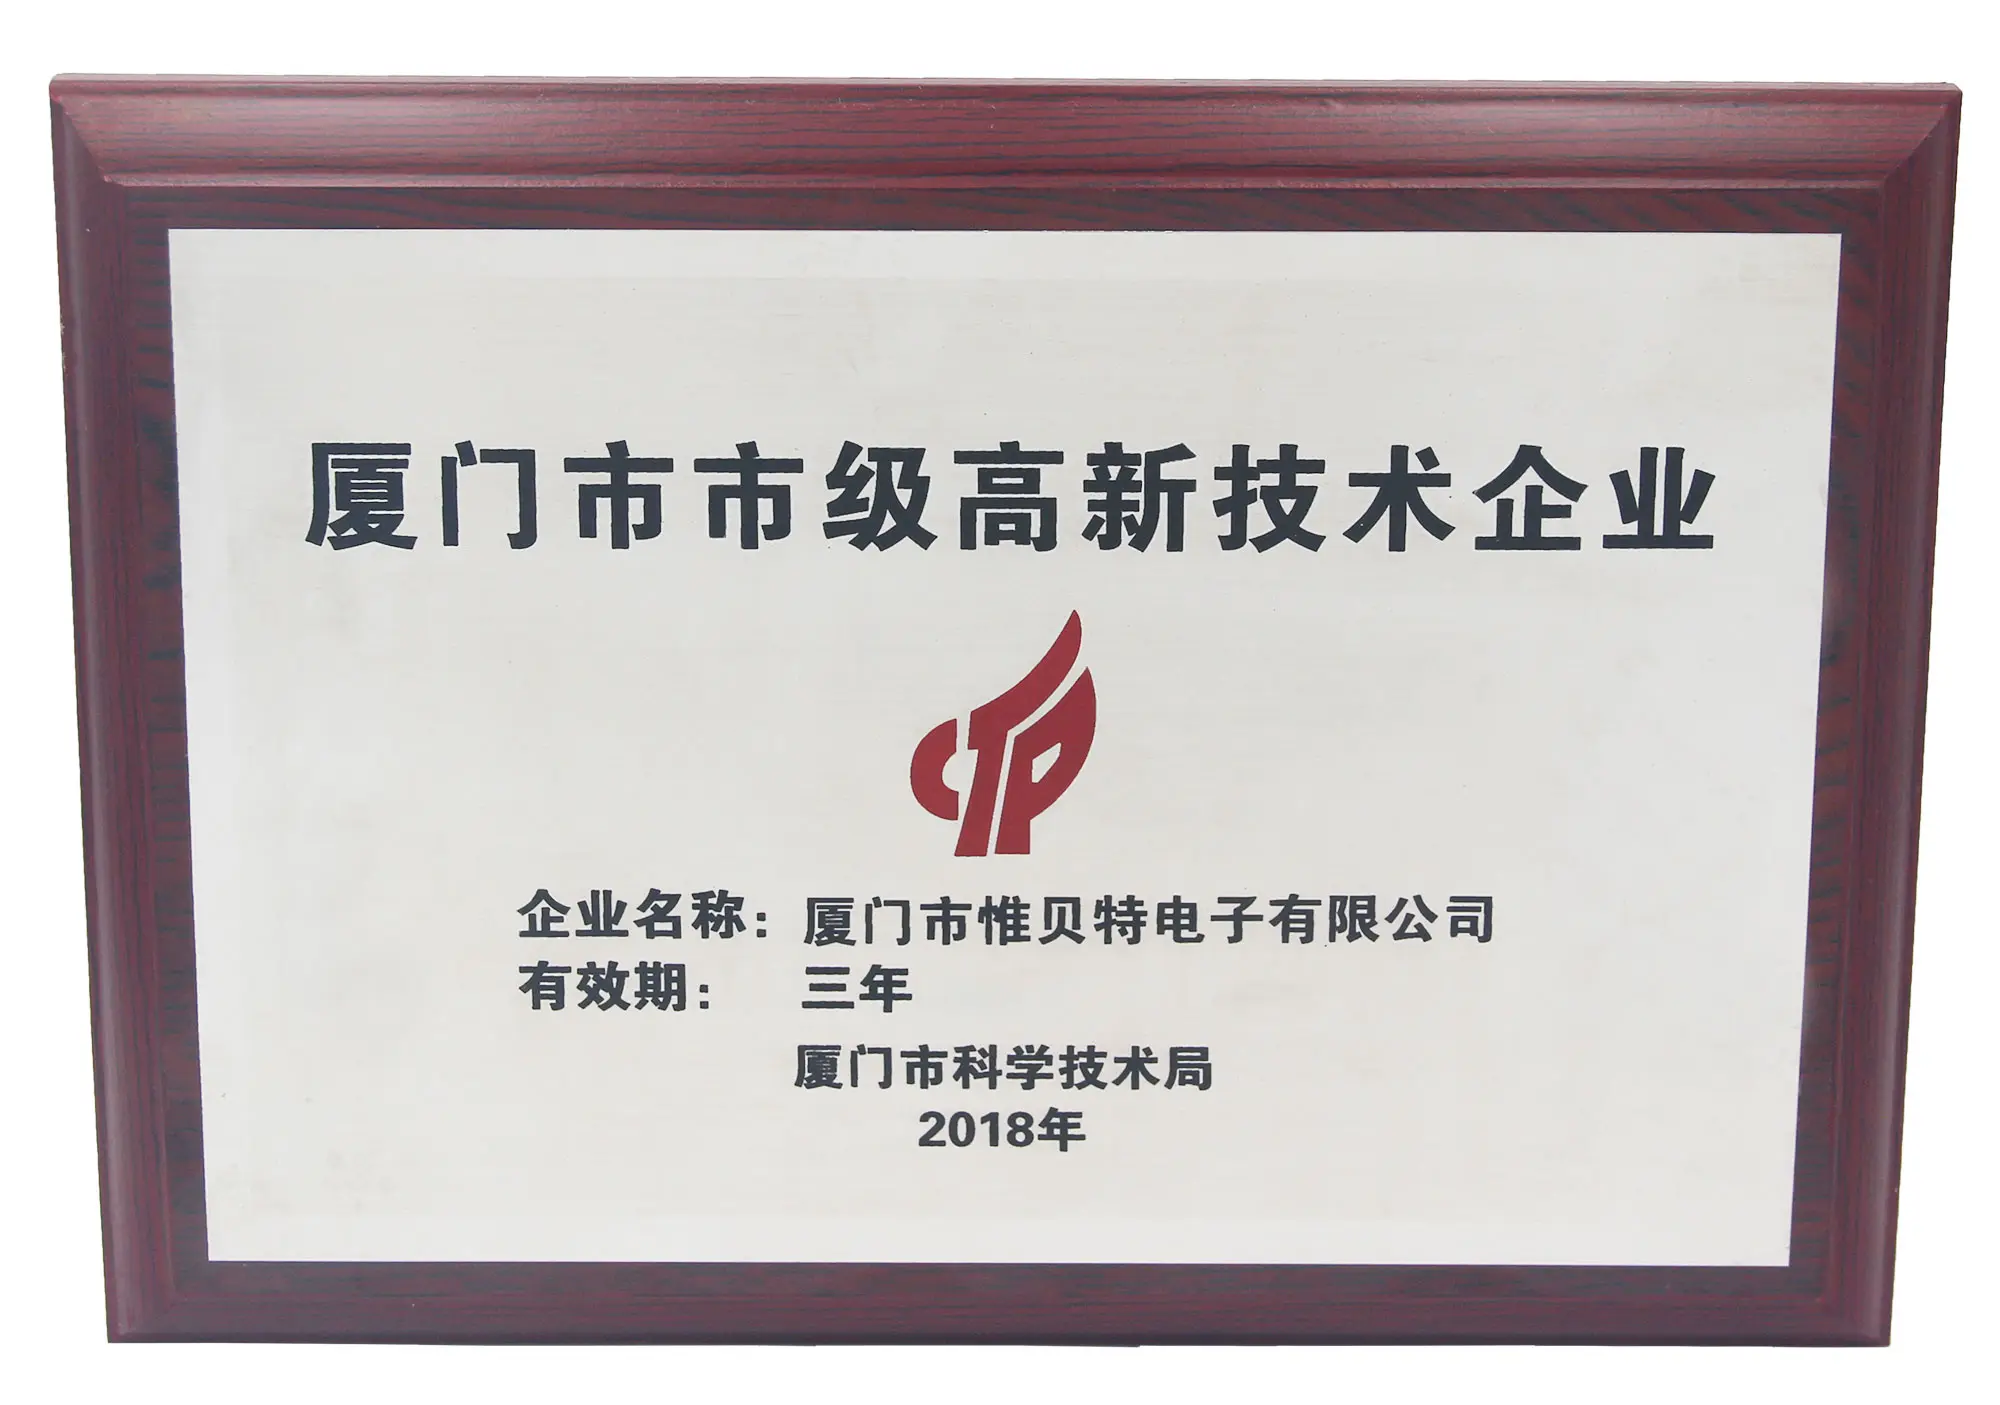 ВБЭТ получил сертификат «высокотехнологичное предприятие» в 2018 году